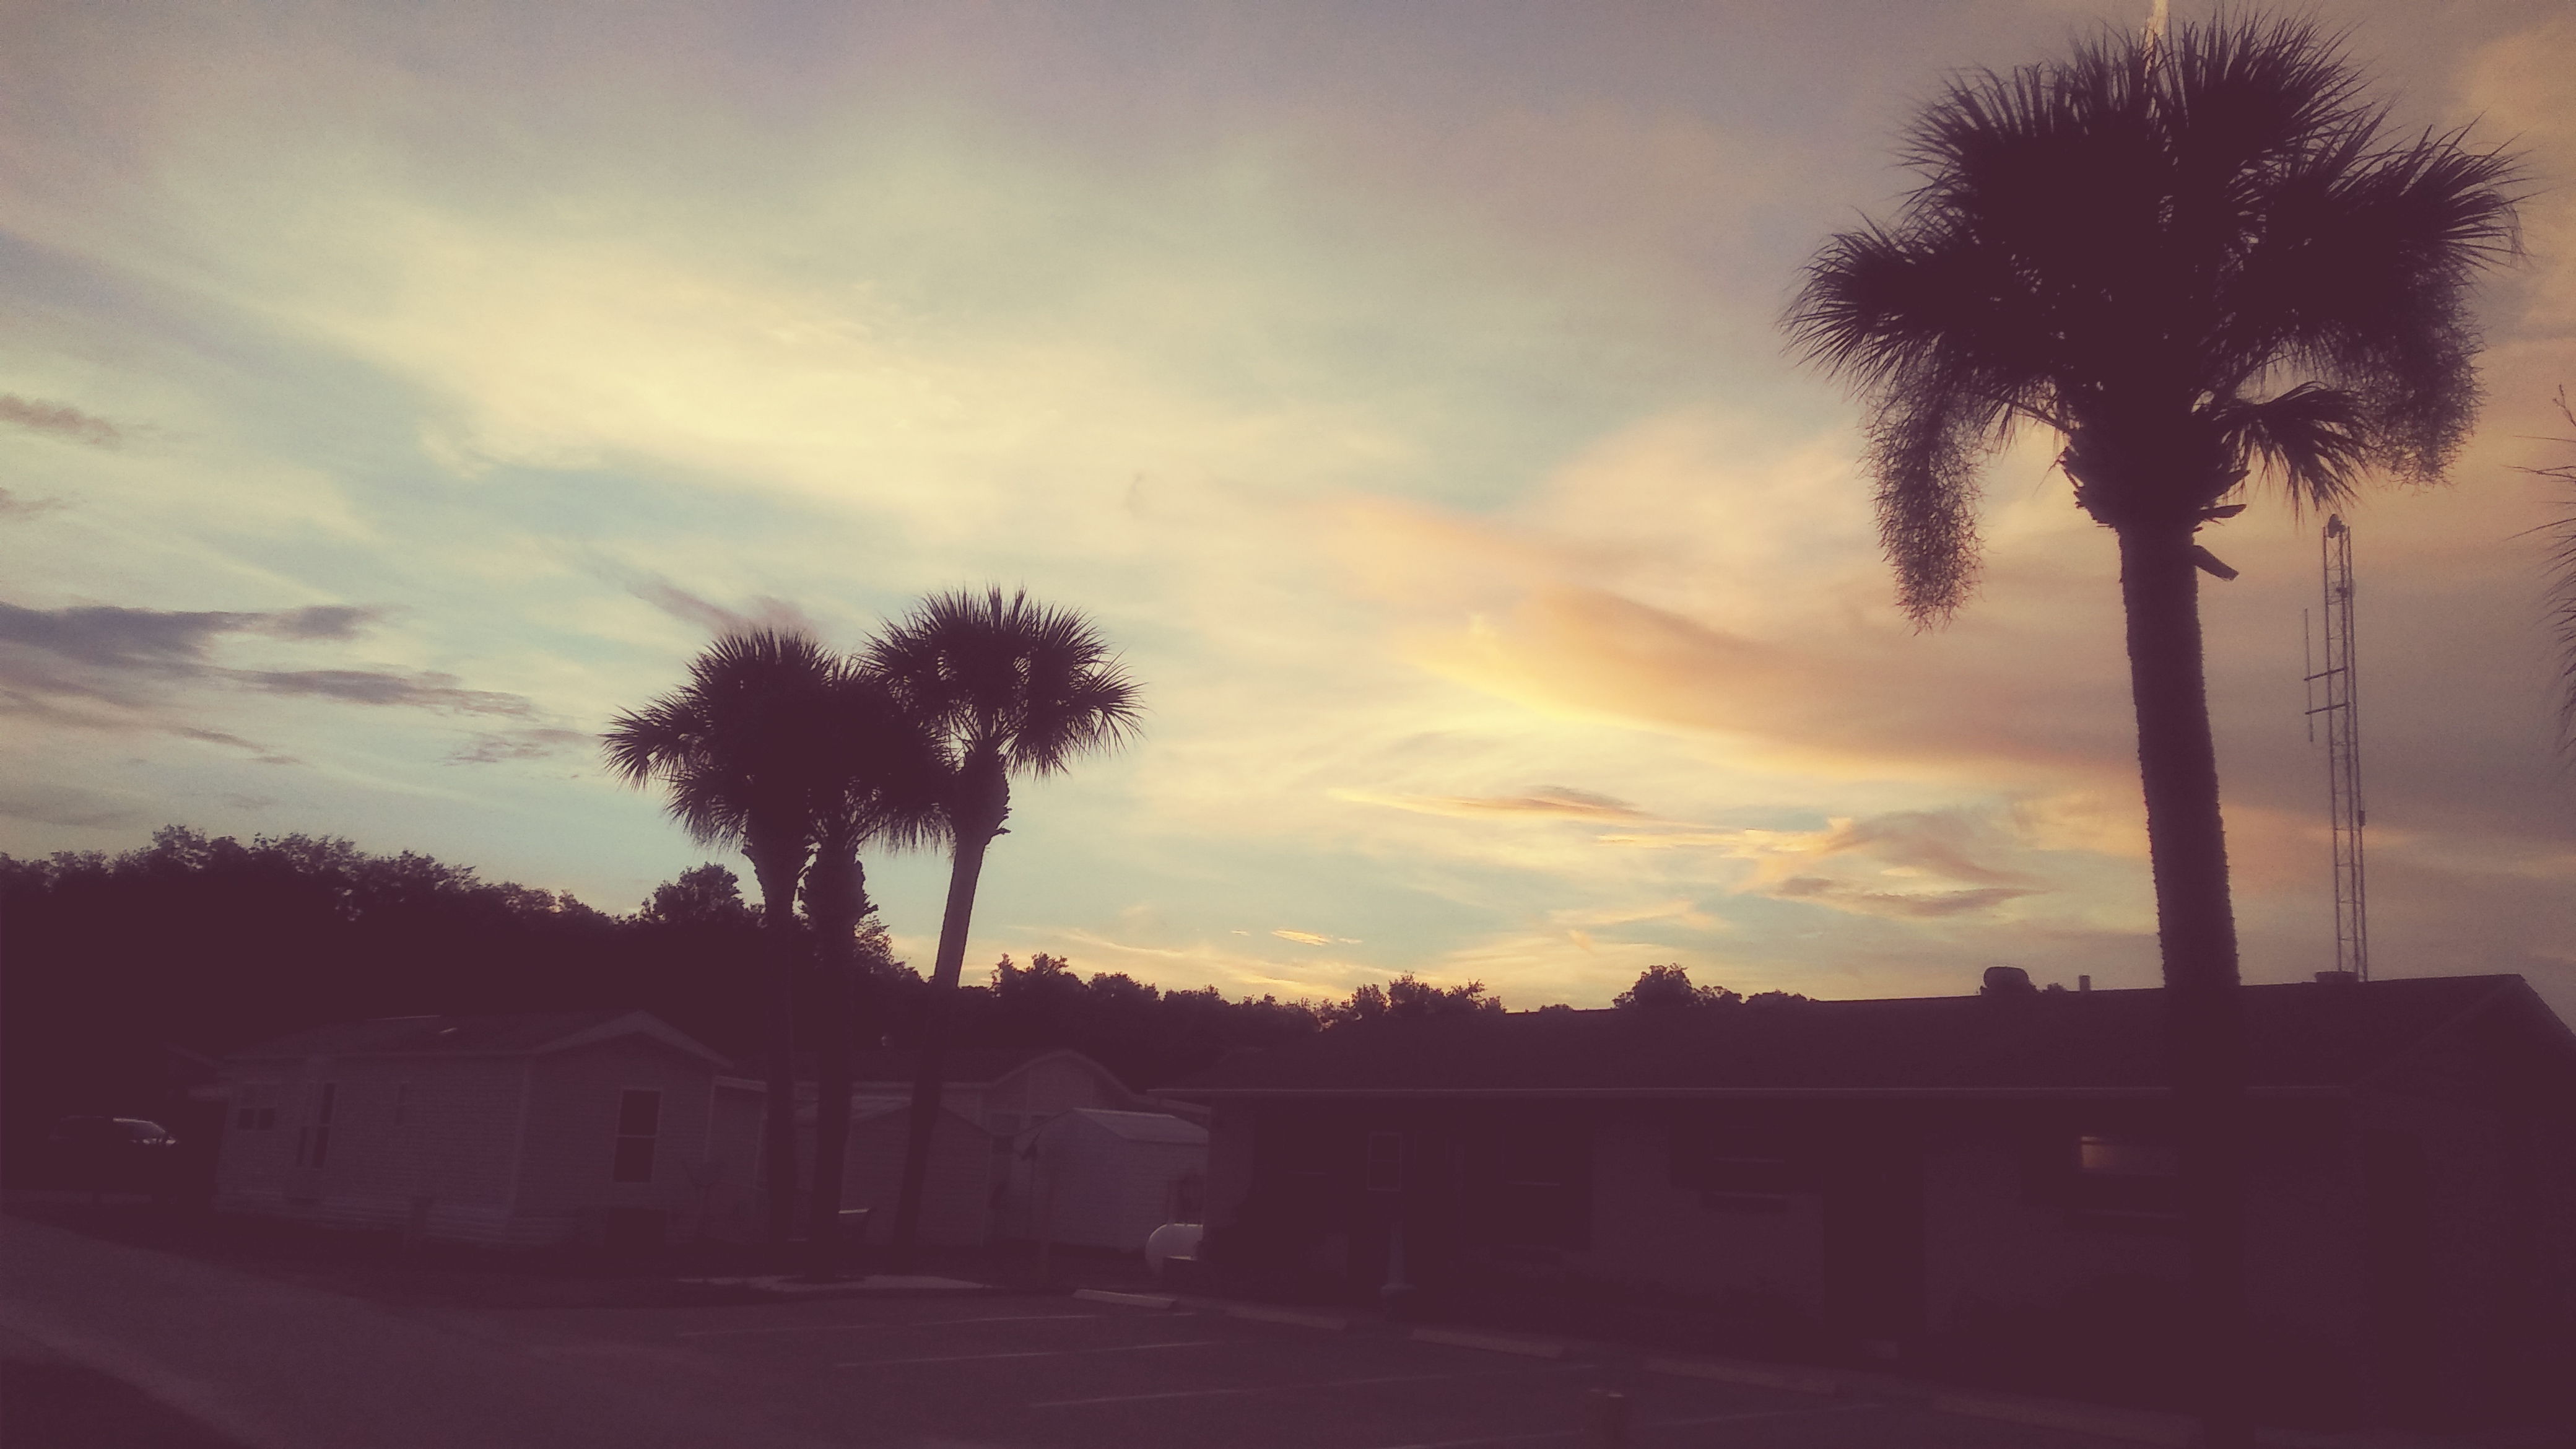 Not Nibiru, but a magnificent Florida evening. I took the photo.